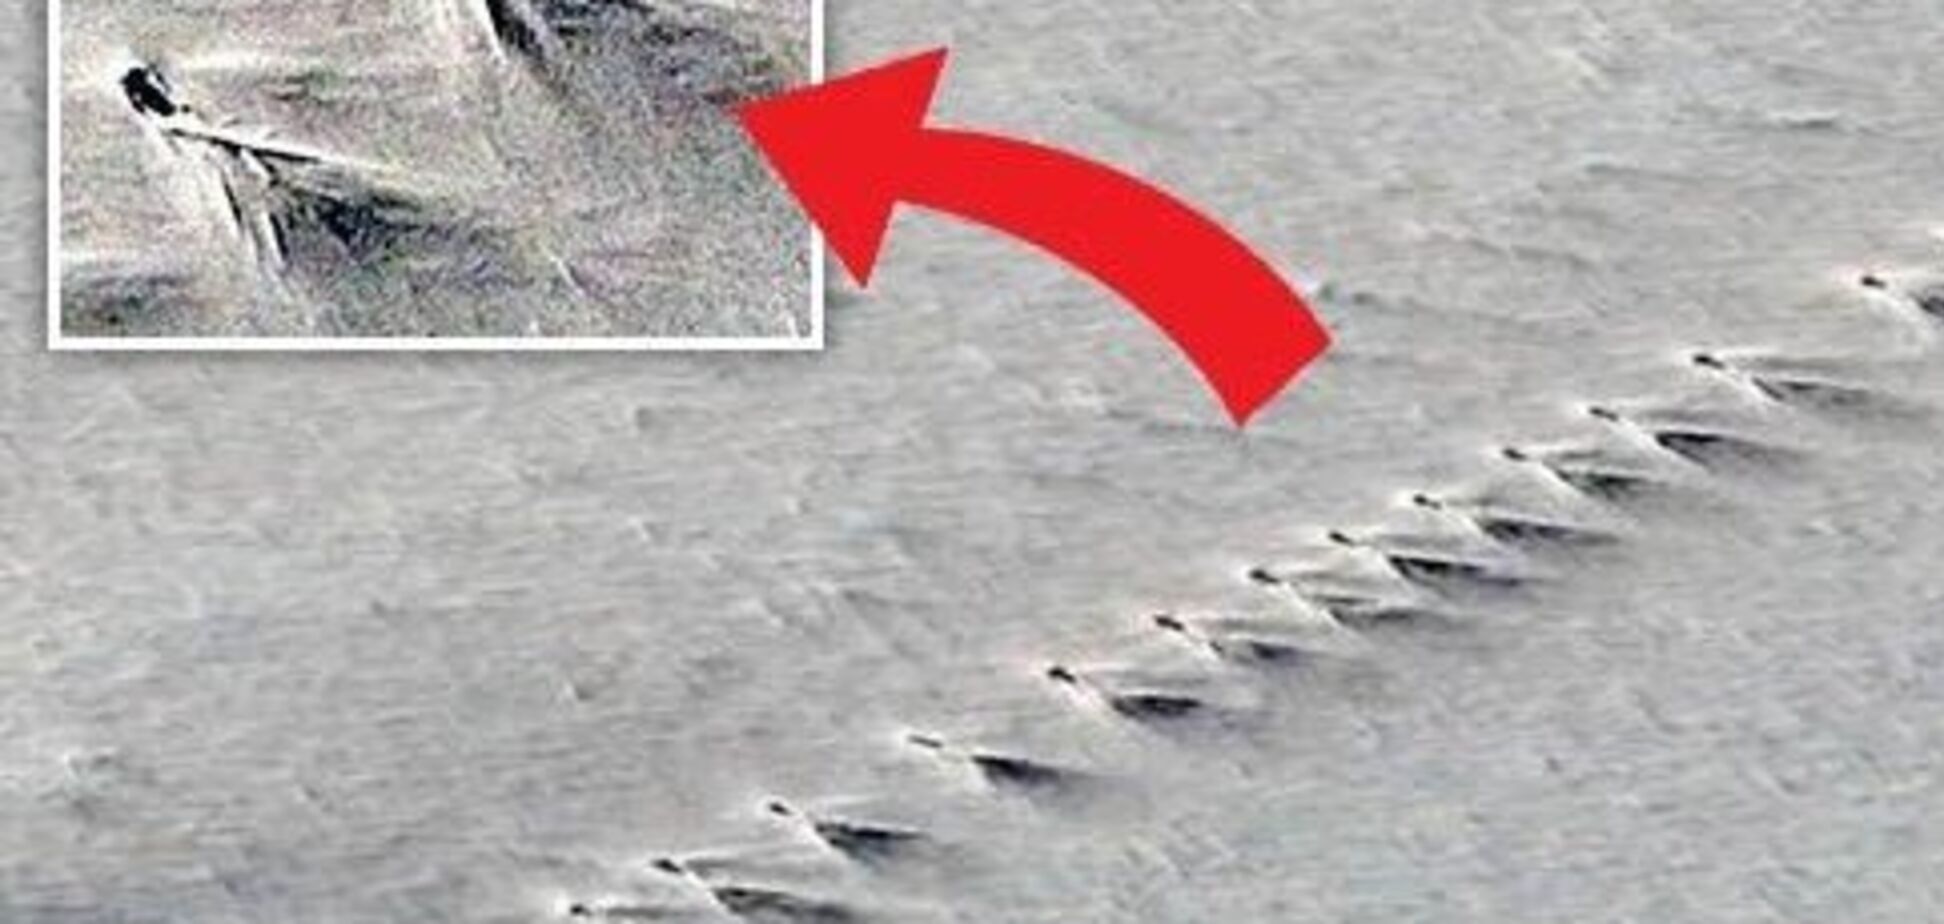 Стародавні піраміди і військова база: в Антарктиді виявили дивні сліди